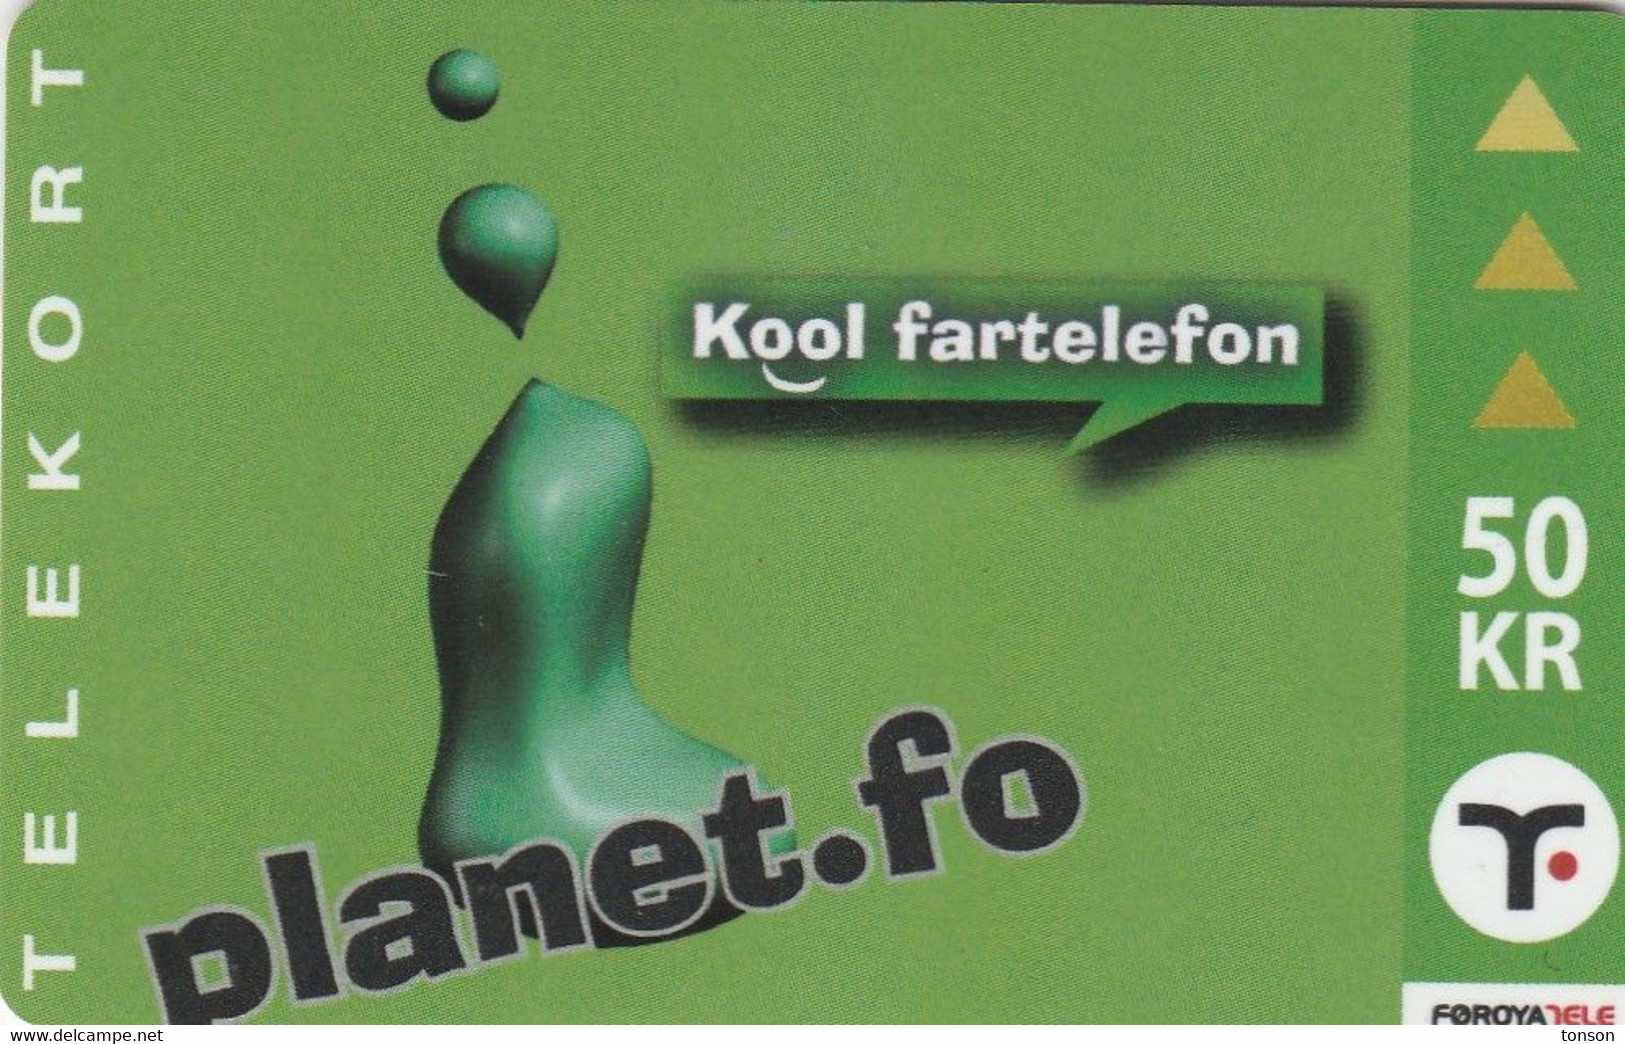 Faroe Islands, OR-003, 50 Kr ,  Planet.fo, Kool Fartelefon, 2 Scans. - Féroé (Iles)